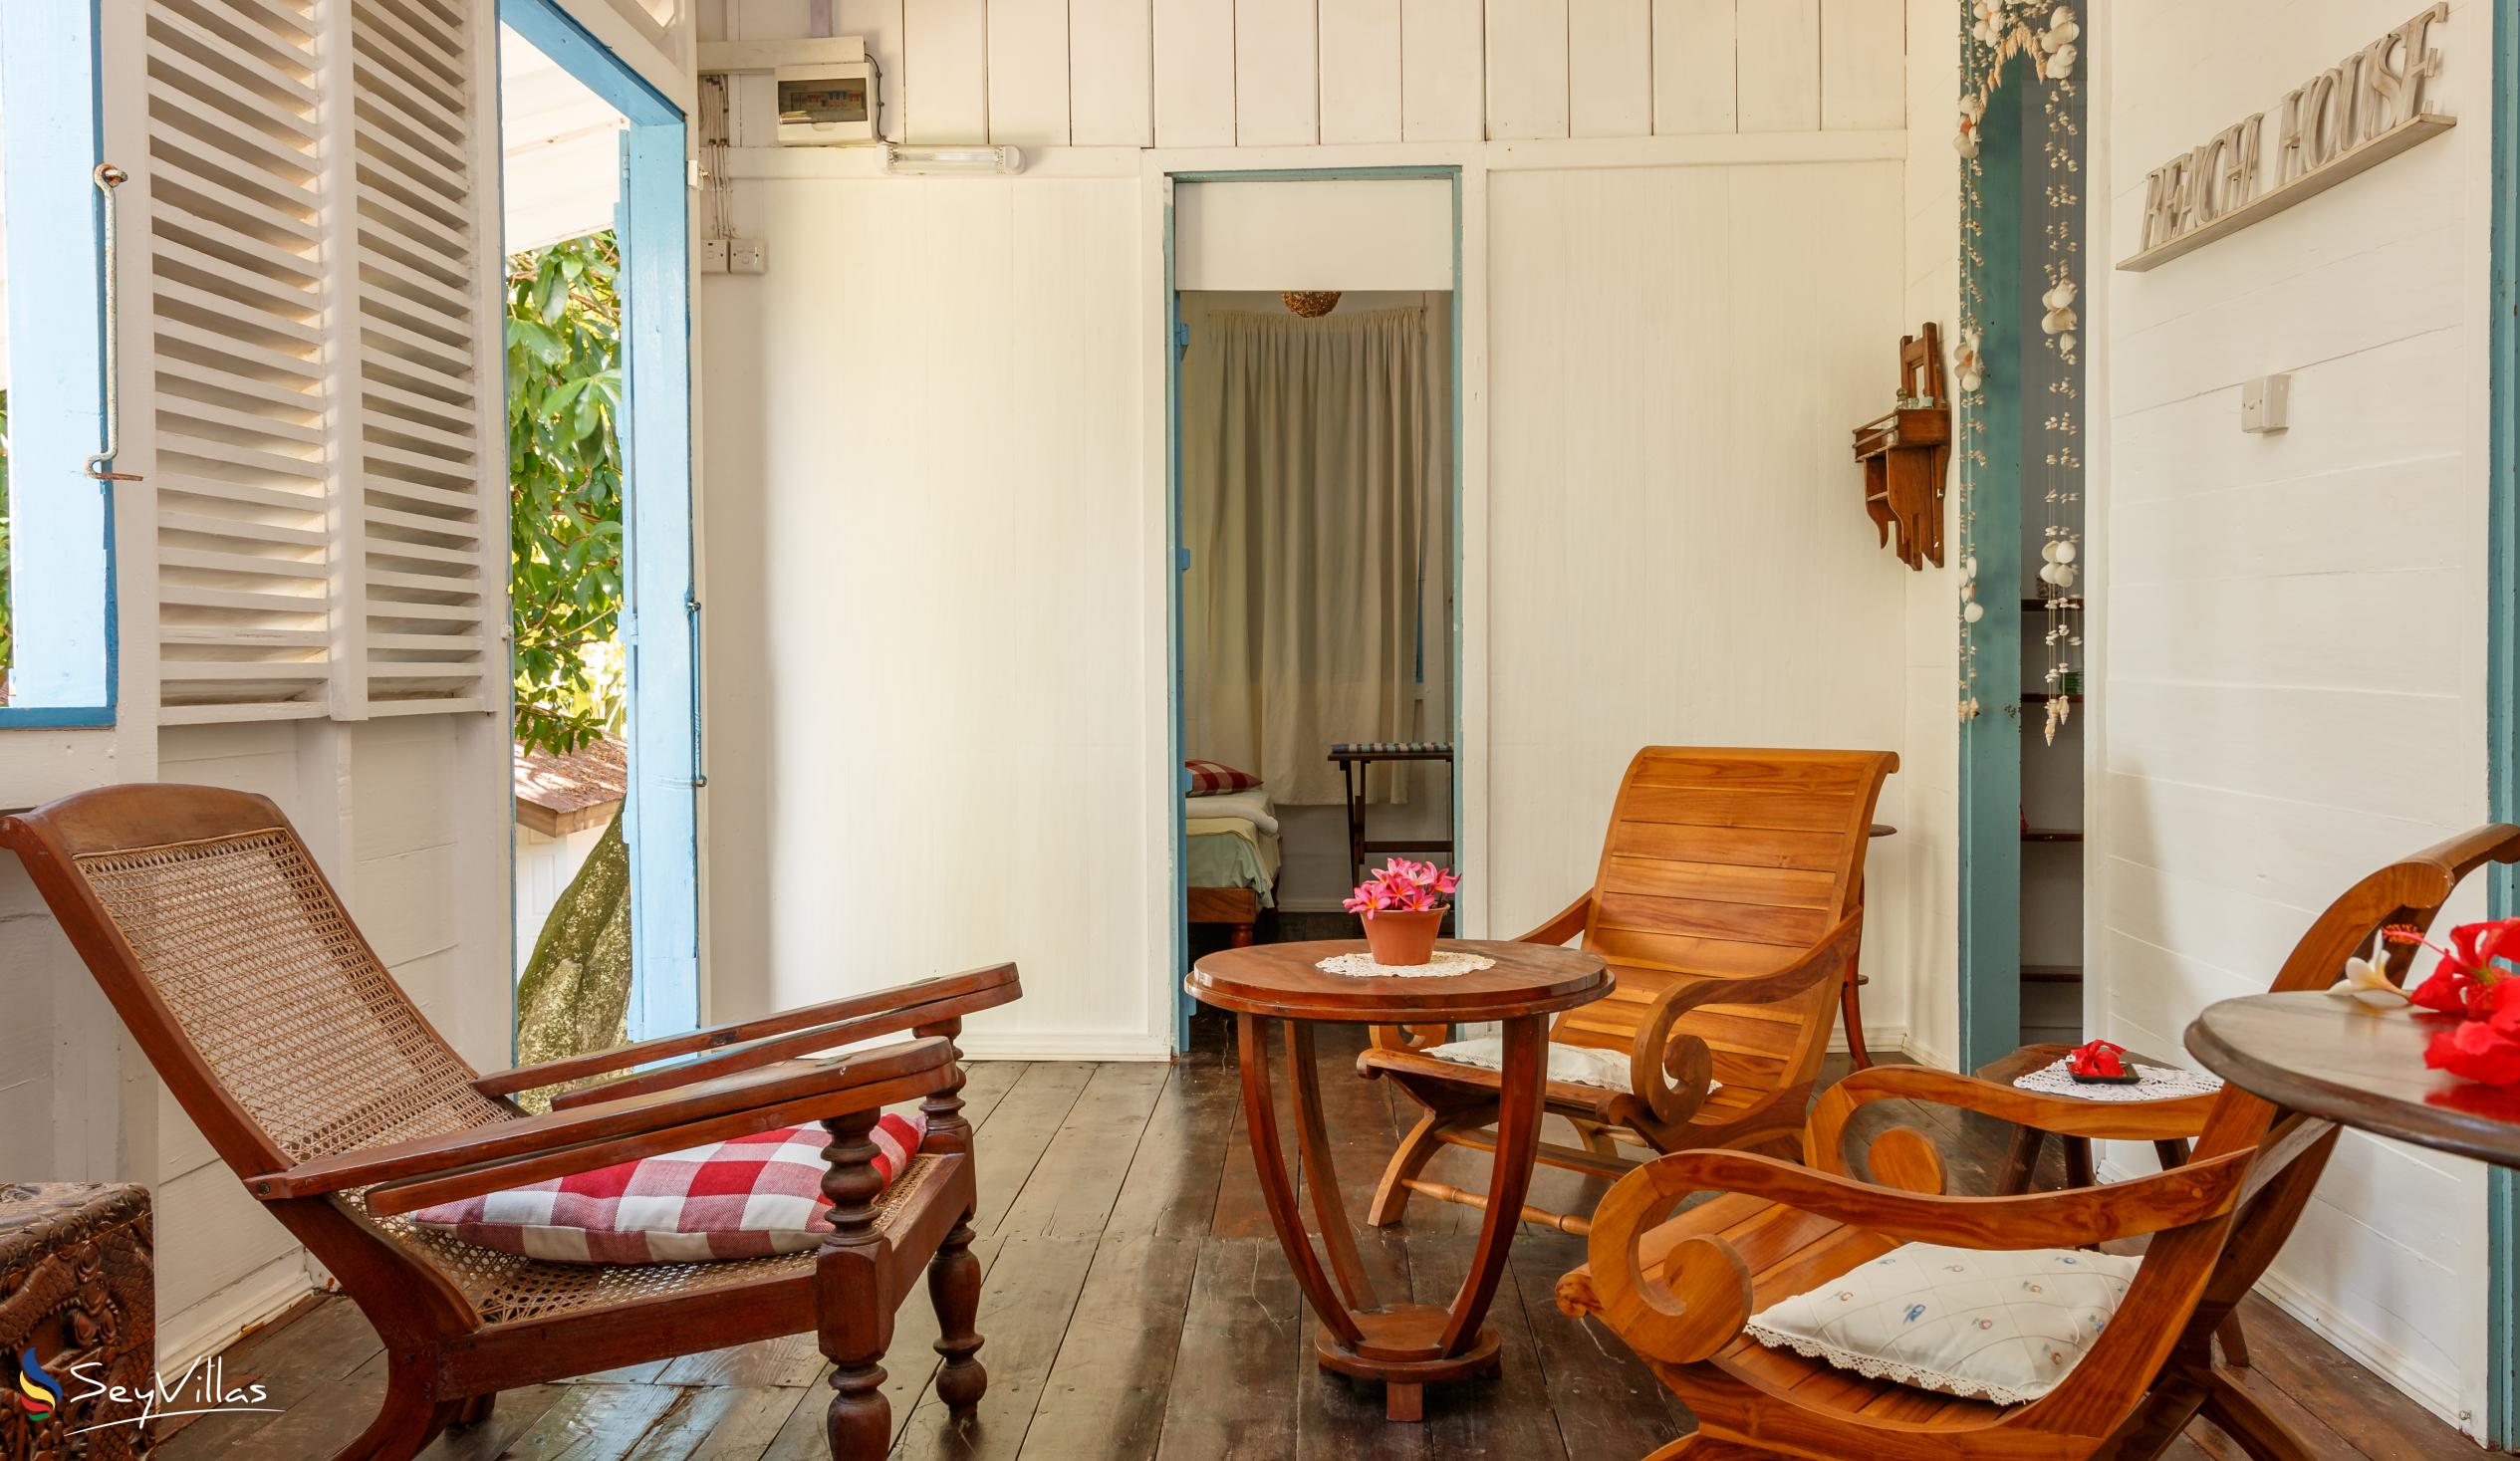 Foto 79: The Beach House (Chateau Martha) - Maison de vacances avec 1 chambre à coucher - Mahé (Seychelles)